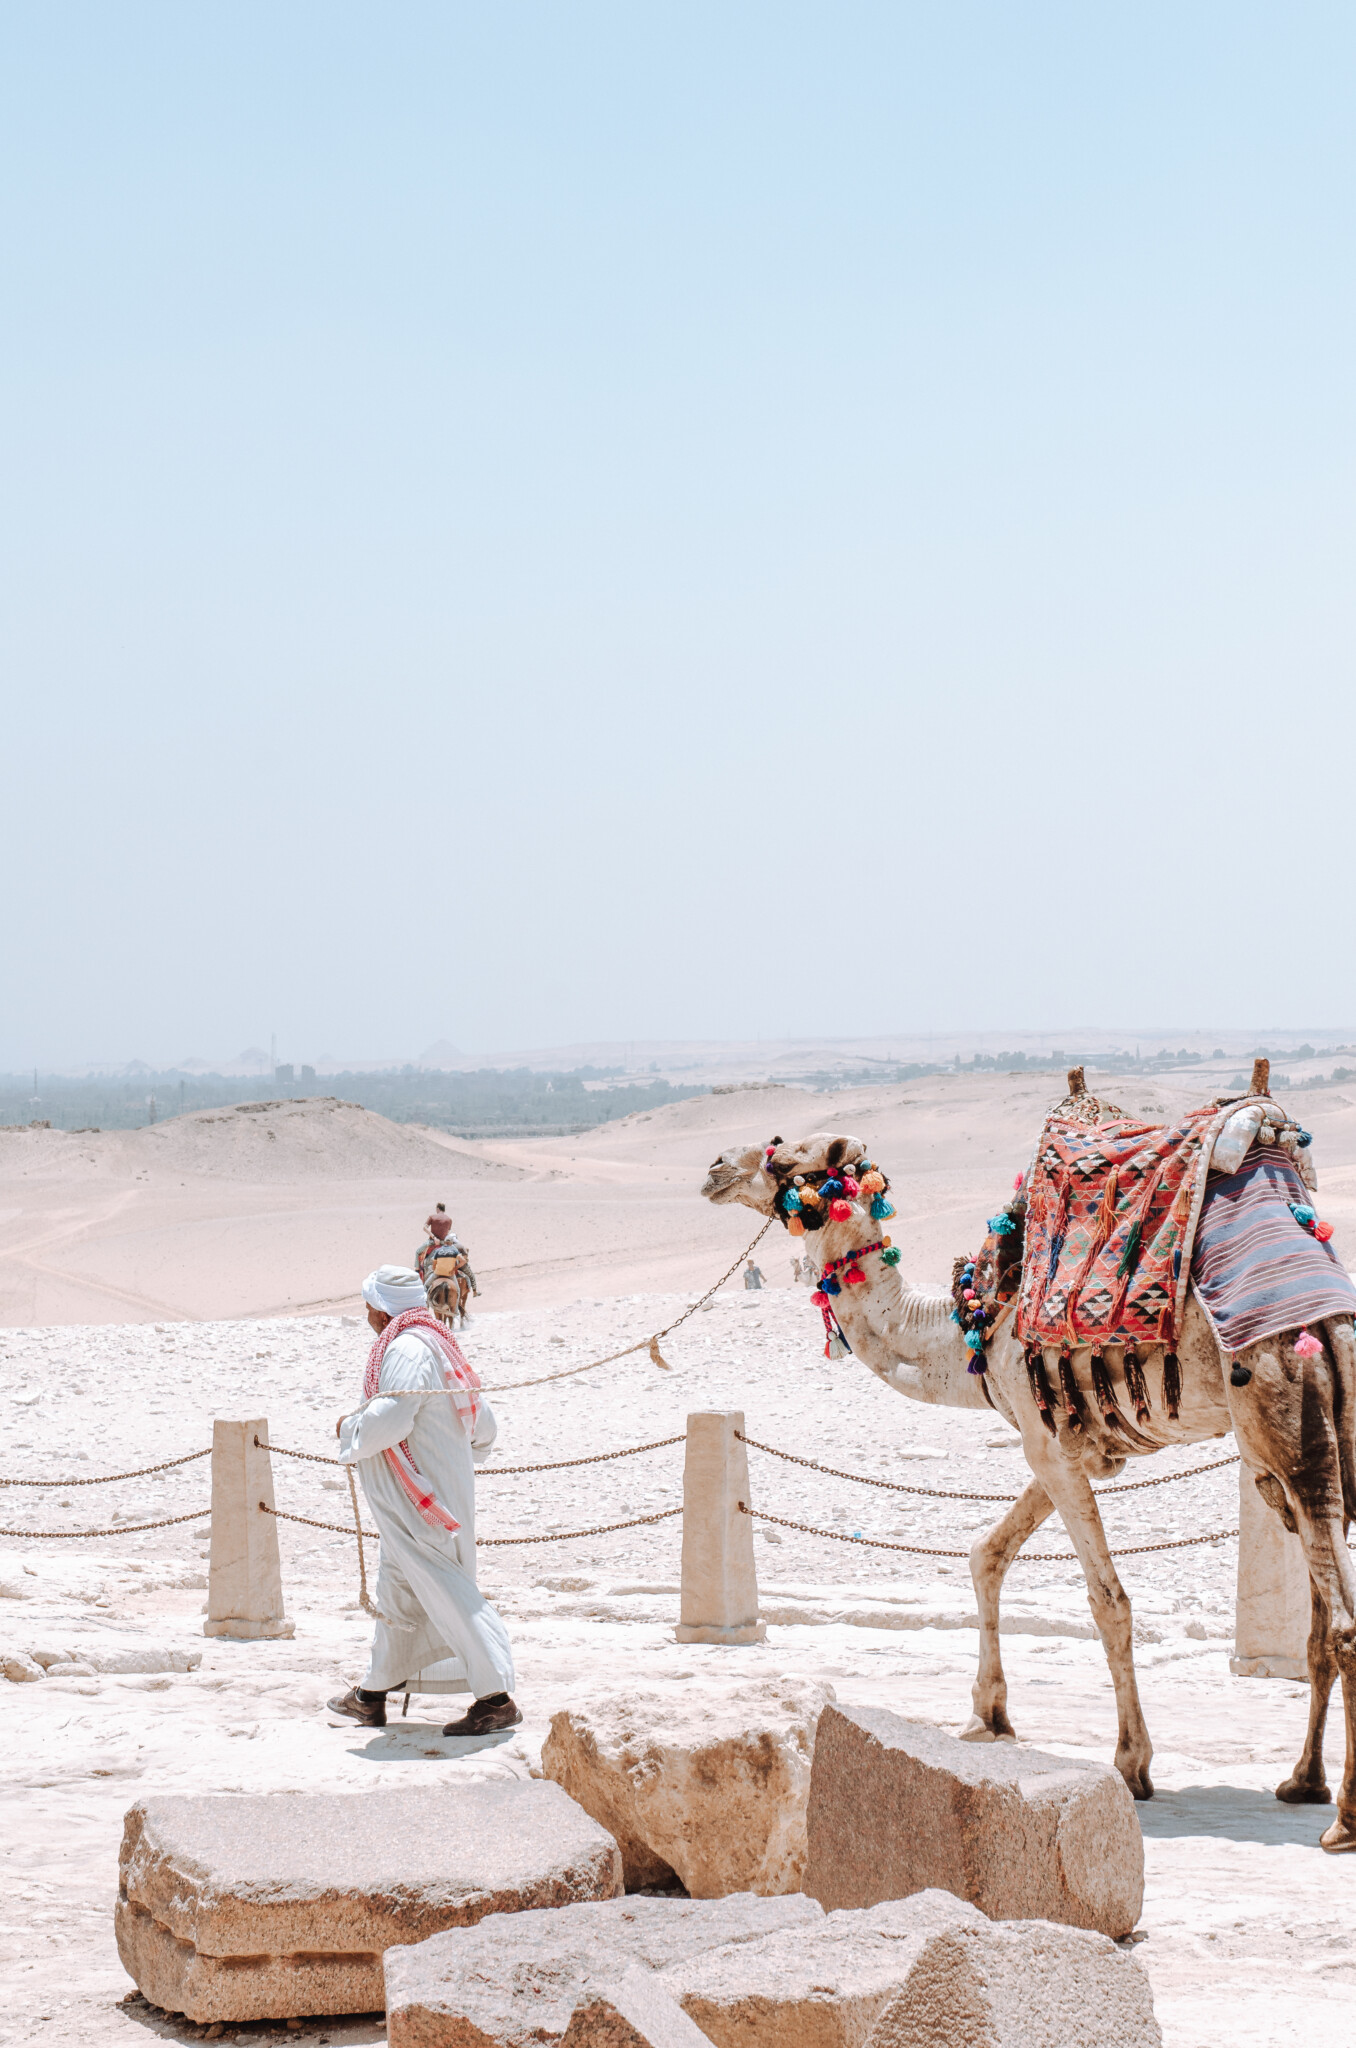 Ein Kamelbesitzer in Ägypten